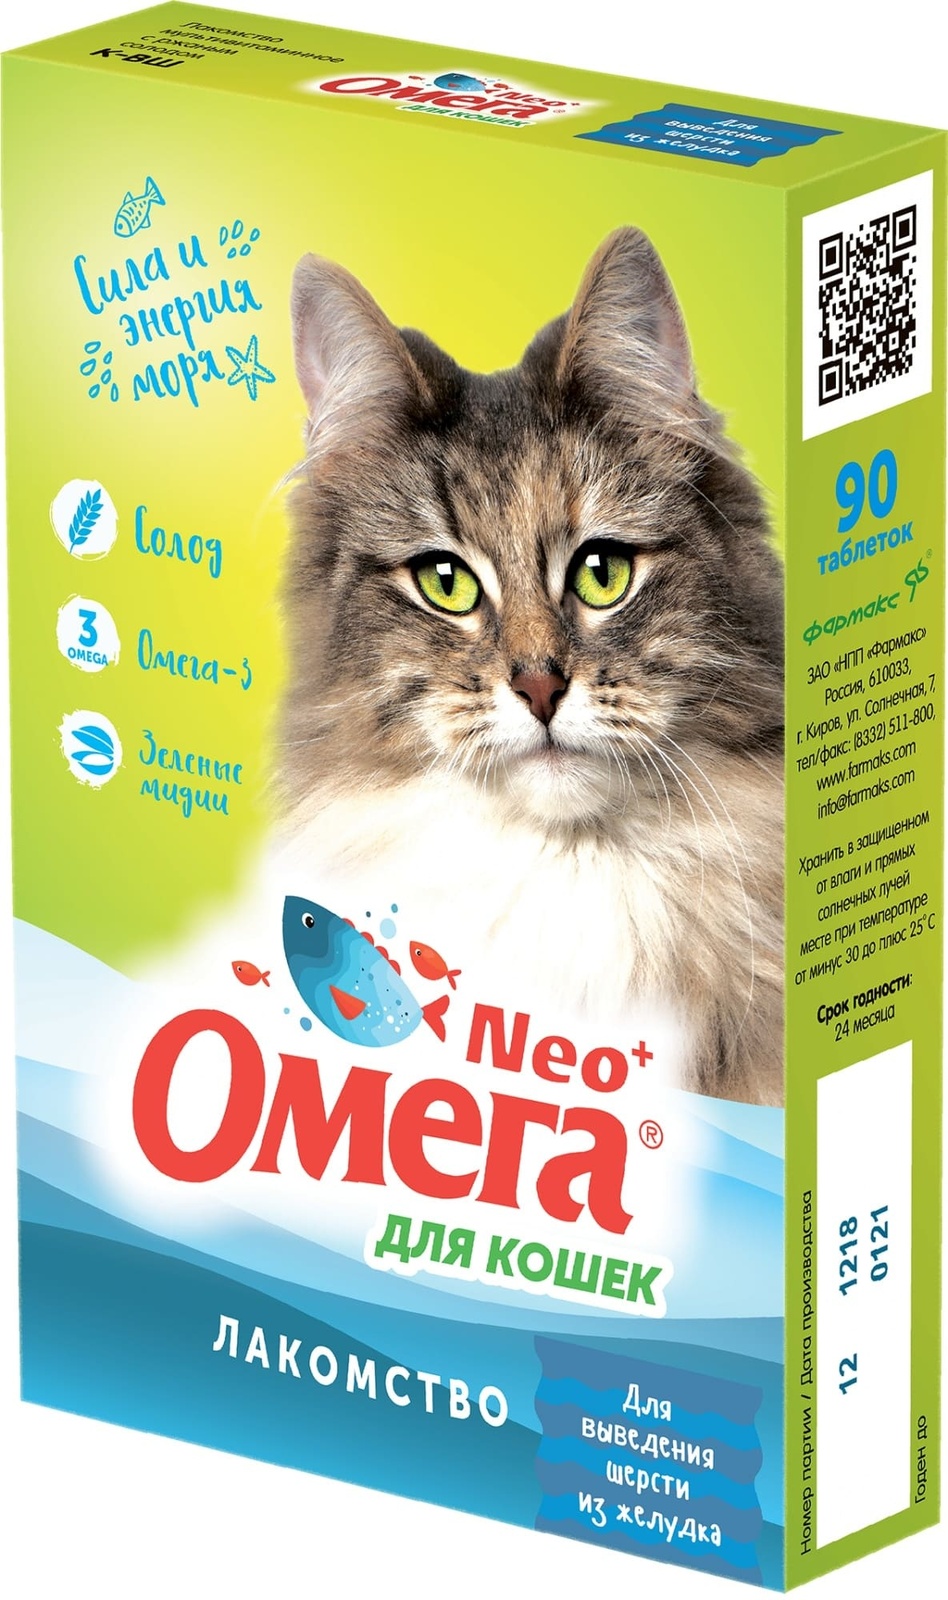 Фармакс Фармакс мультивитаминное лакомство Омега Neo+ Вывод шерсти с ржаным солодом для кошек (60 г)